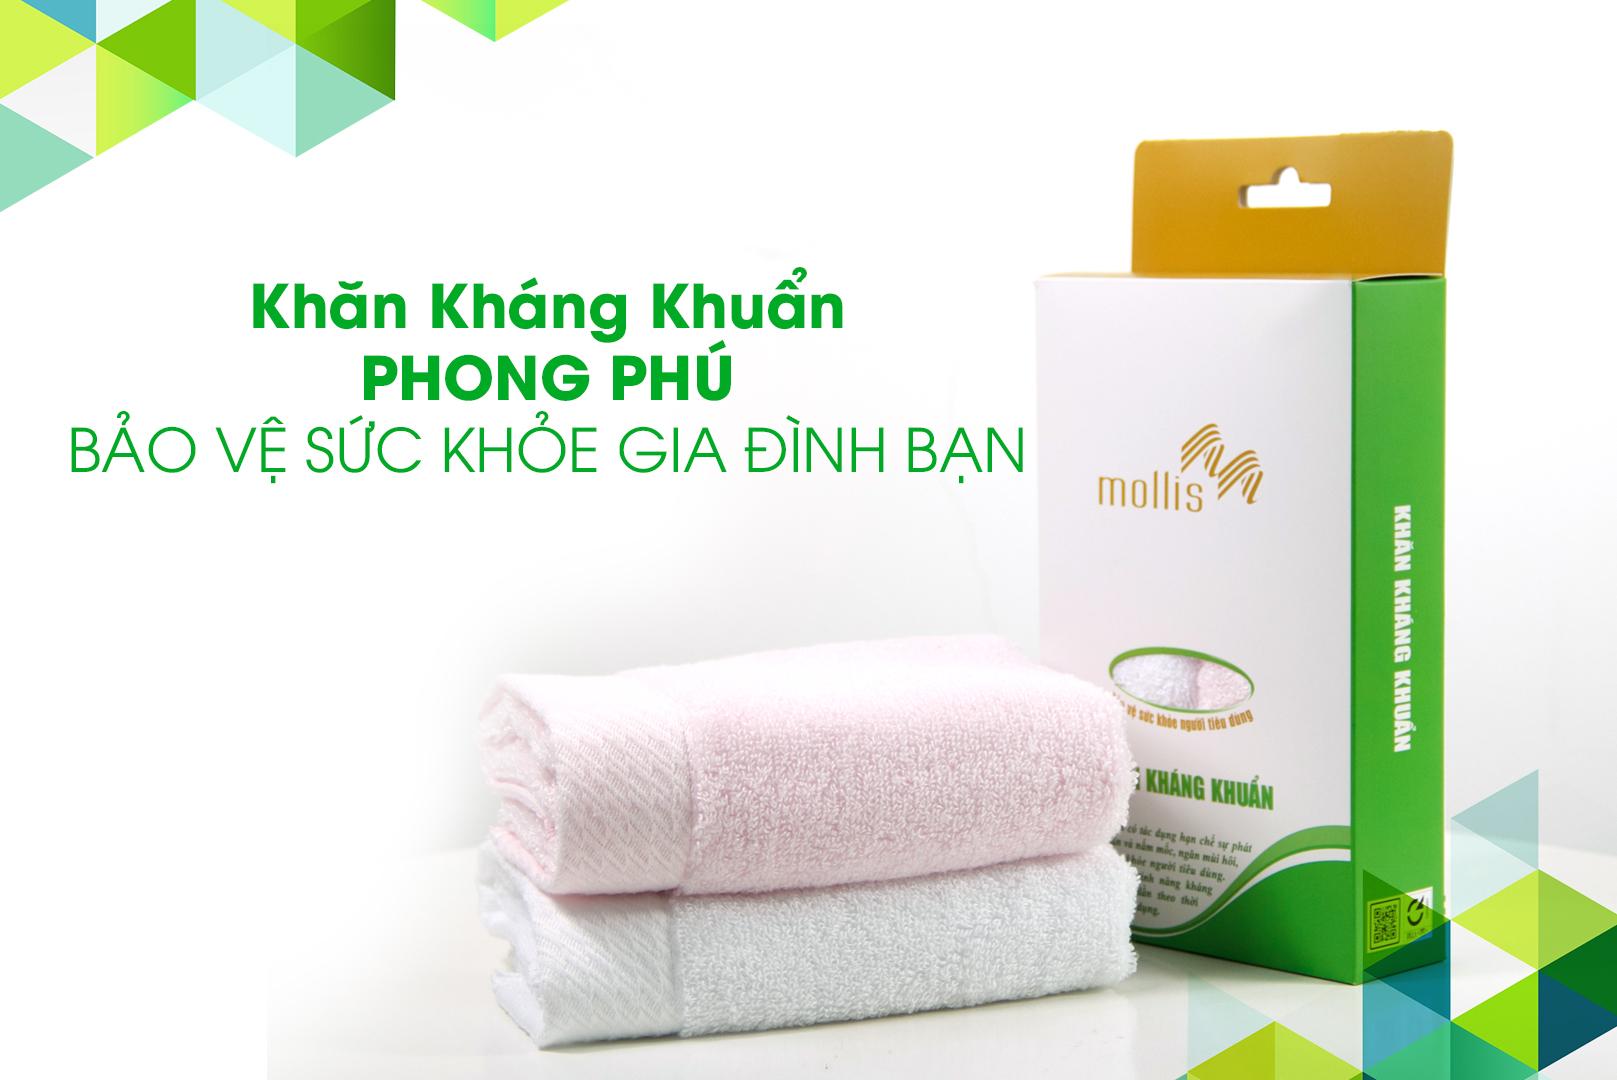 Phong Phú ra mắt sản phẩm khăn kháng khuẩn